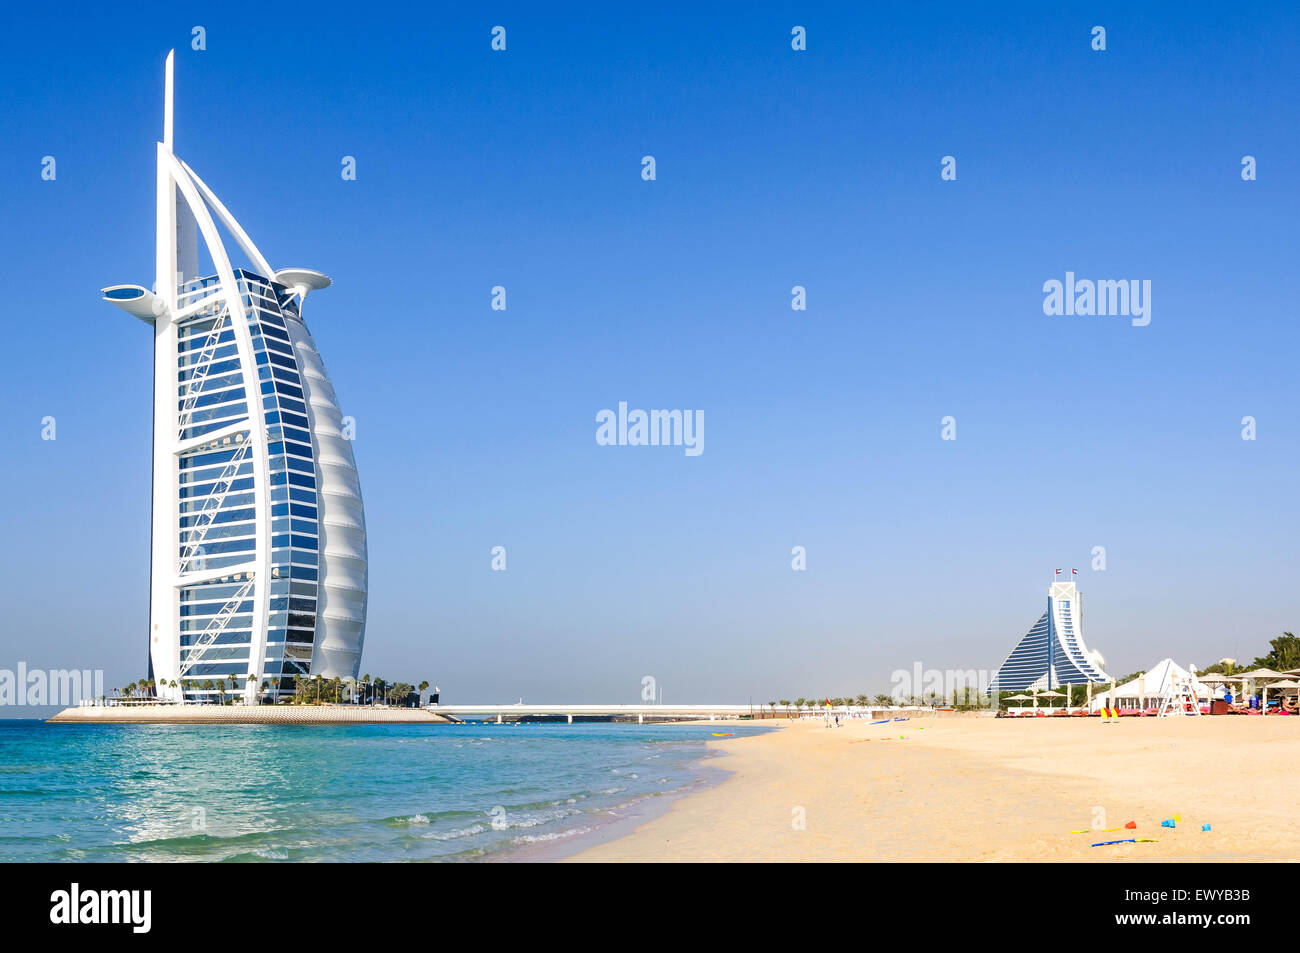 Dubaï, Émirats Arabes Unis - janvier 08, 2012 : avis de l'hôtel Burj Al Arab à partir de la plage de Jumeirah. Burj Al Arab est l'un des monument de Dubaï Banque D'Images